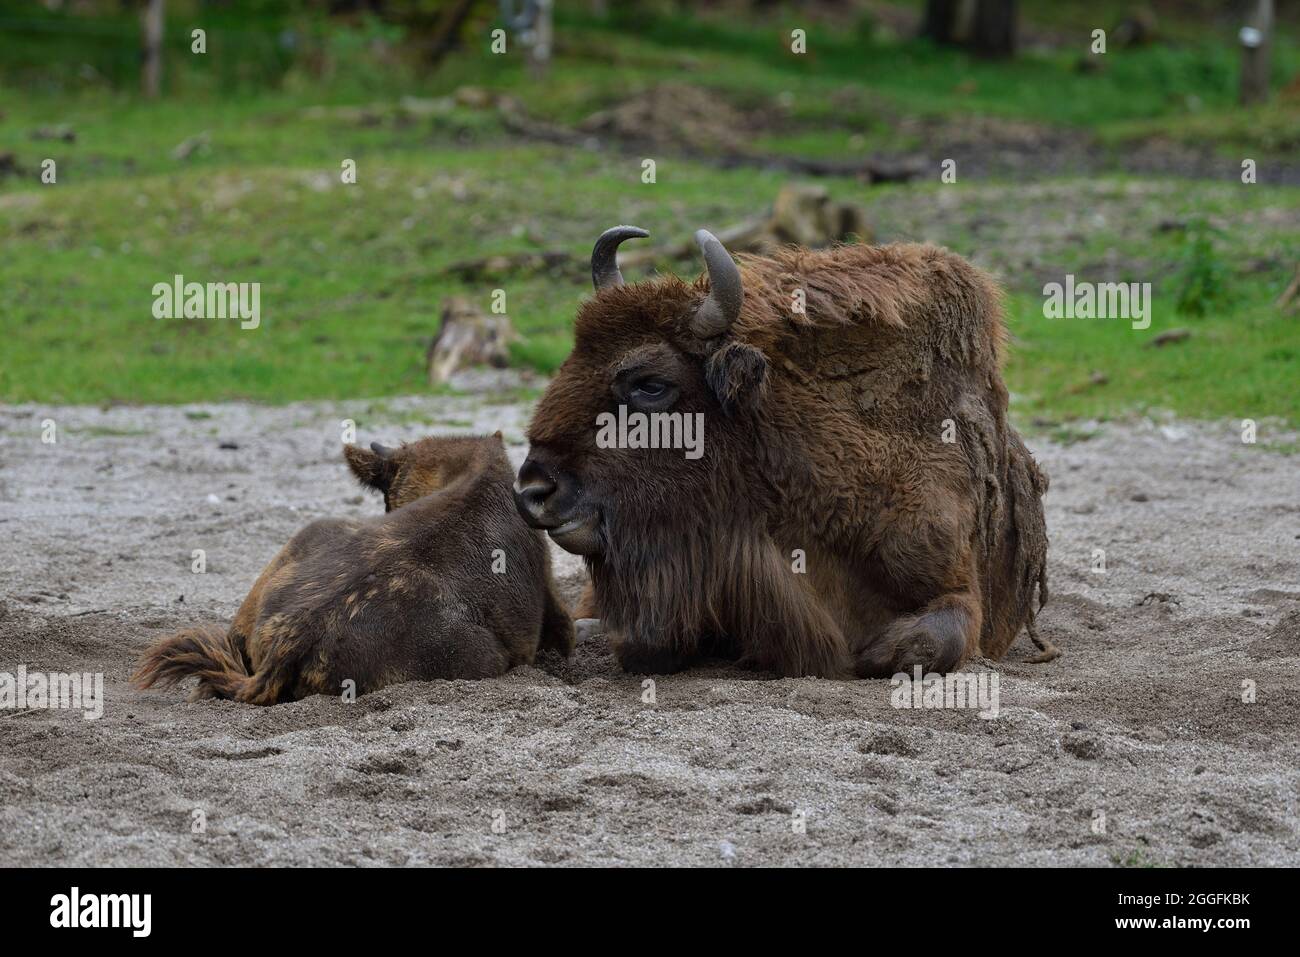 Cumberland Wildlife Park Grünau, Upper Austria, Austria. European bison (Bison bonasus) Stock Photo